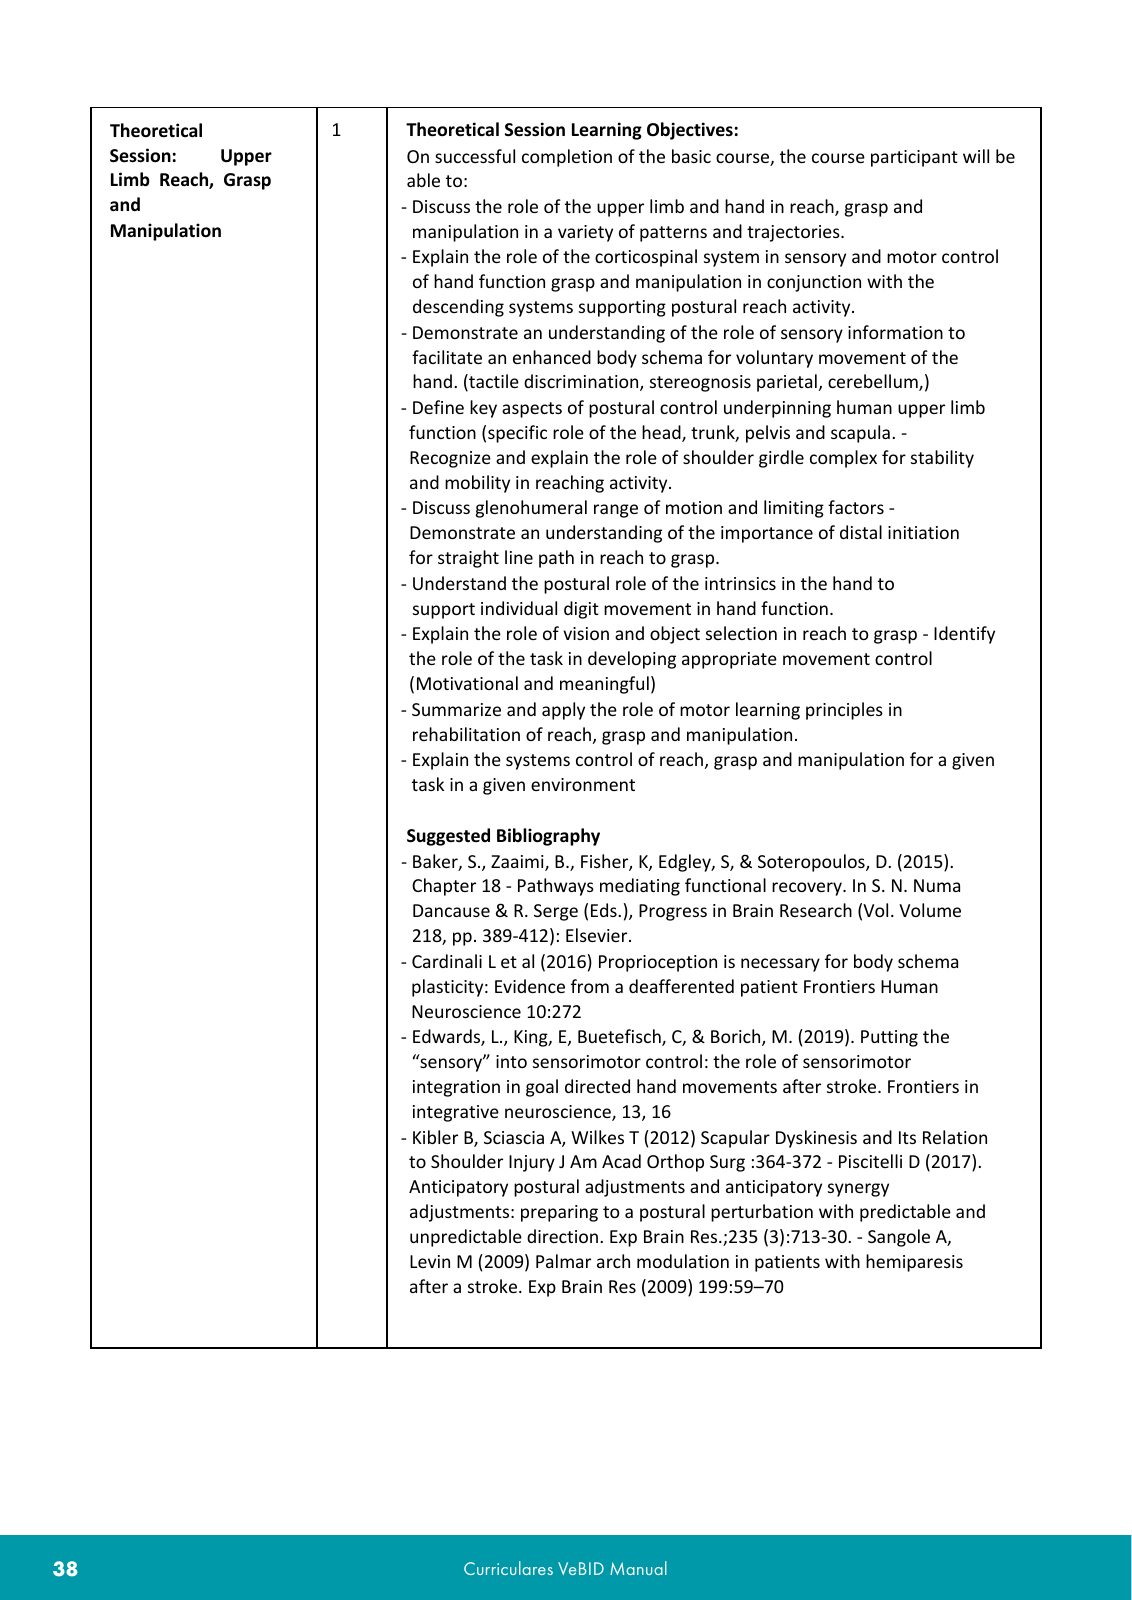 Vorschau VeBID Curriculum 2022 Seite 38